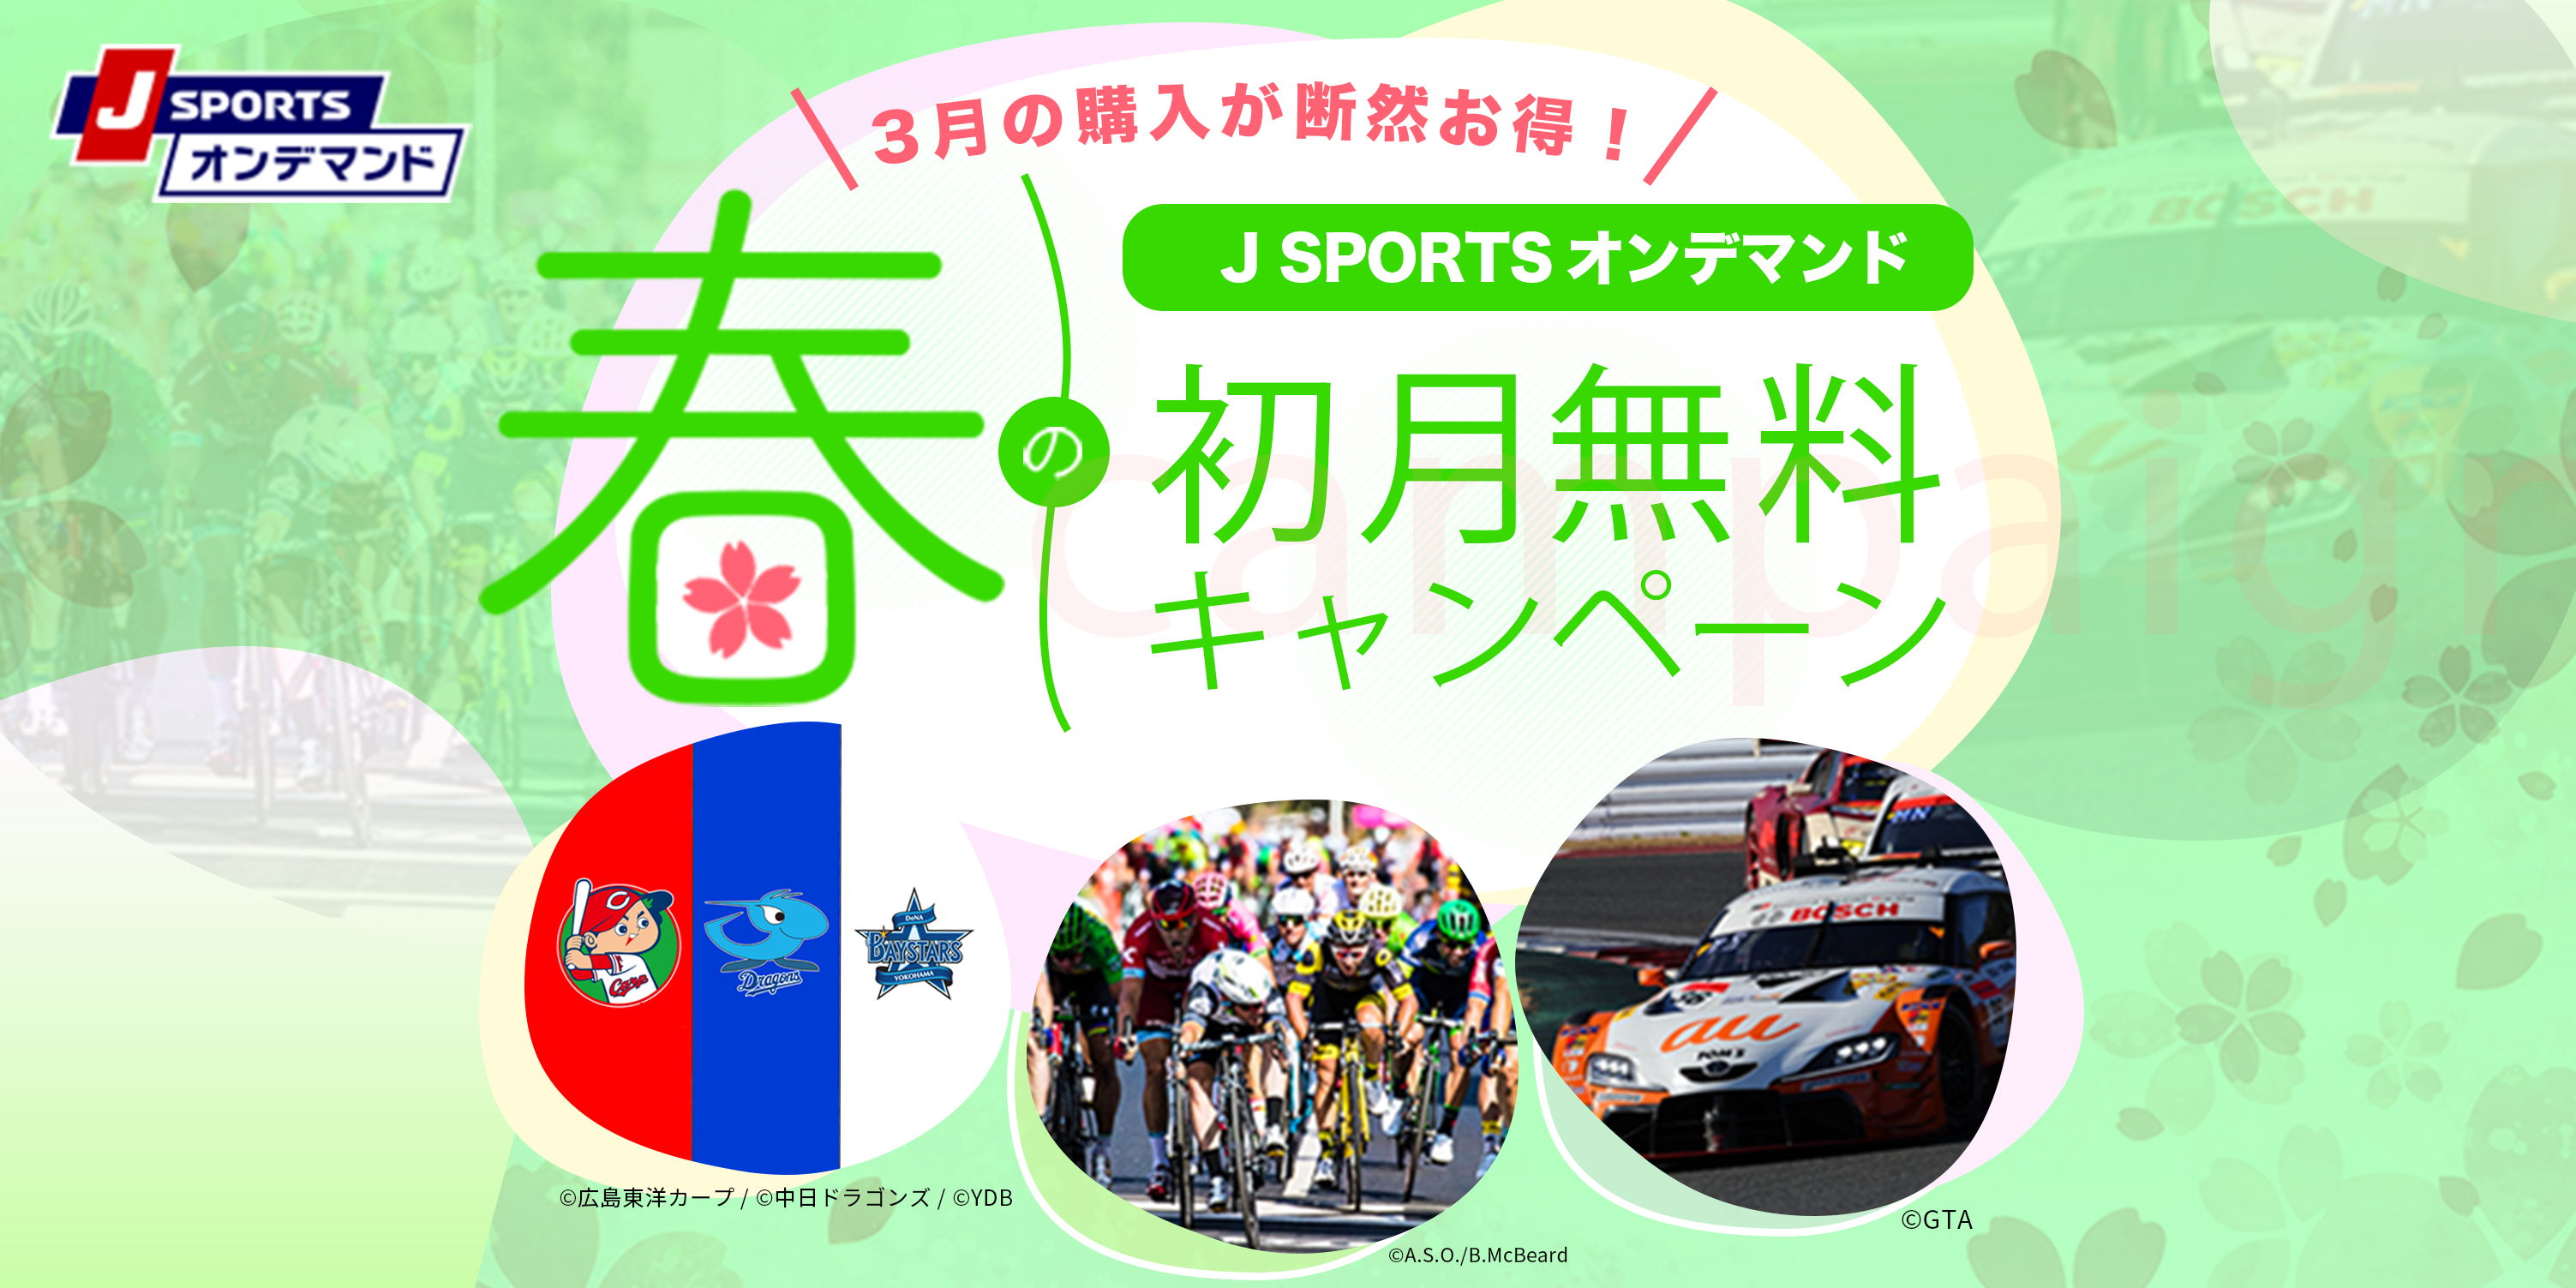 J Sportsオンデマンド 春の初月無料キャンペーン 開催 野球 サイクルロードレース モータースポーツをお得に見よう J Sports のプレスリリース